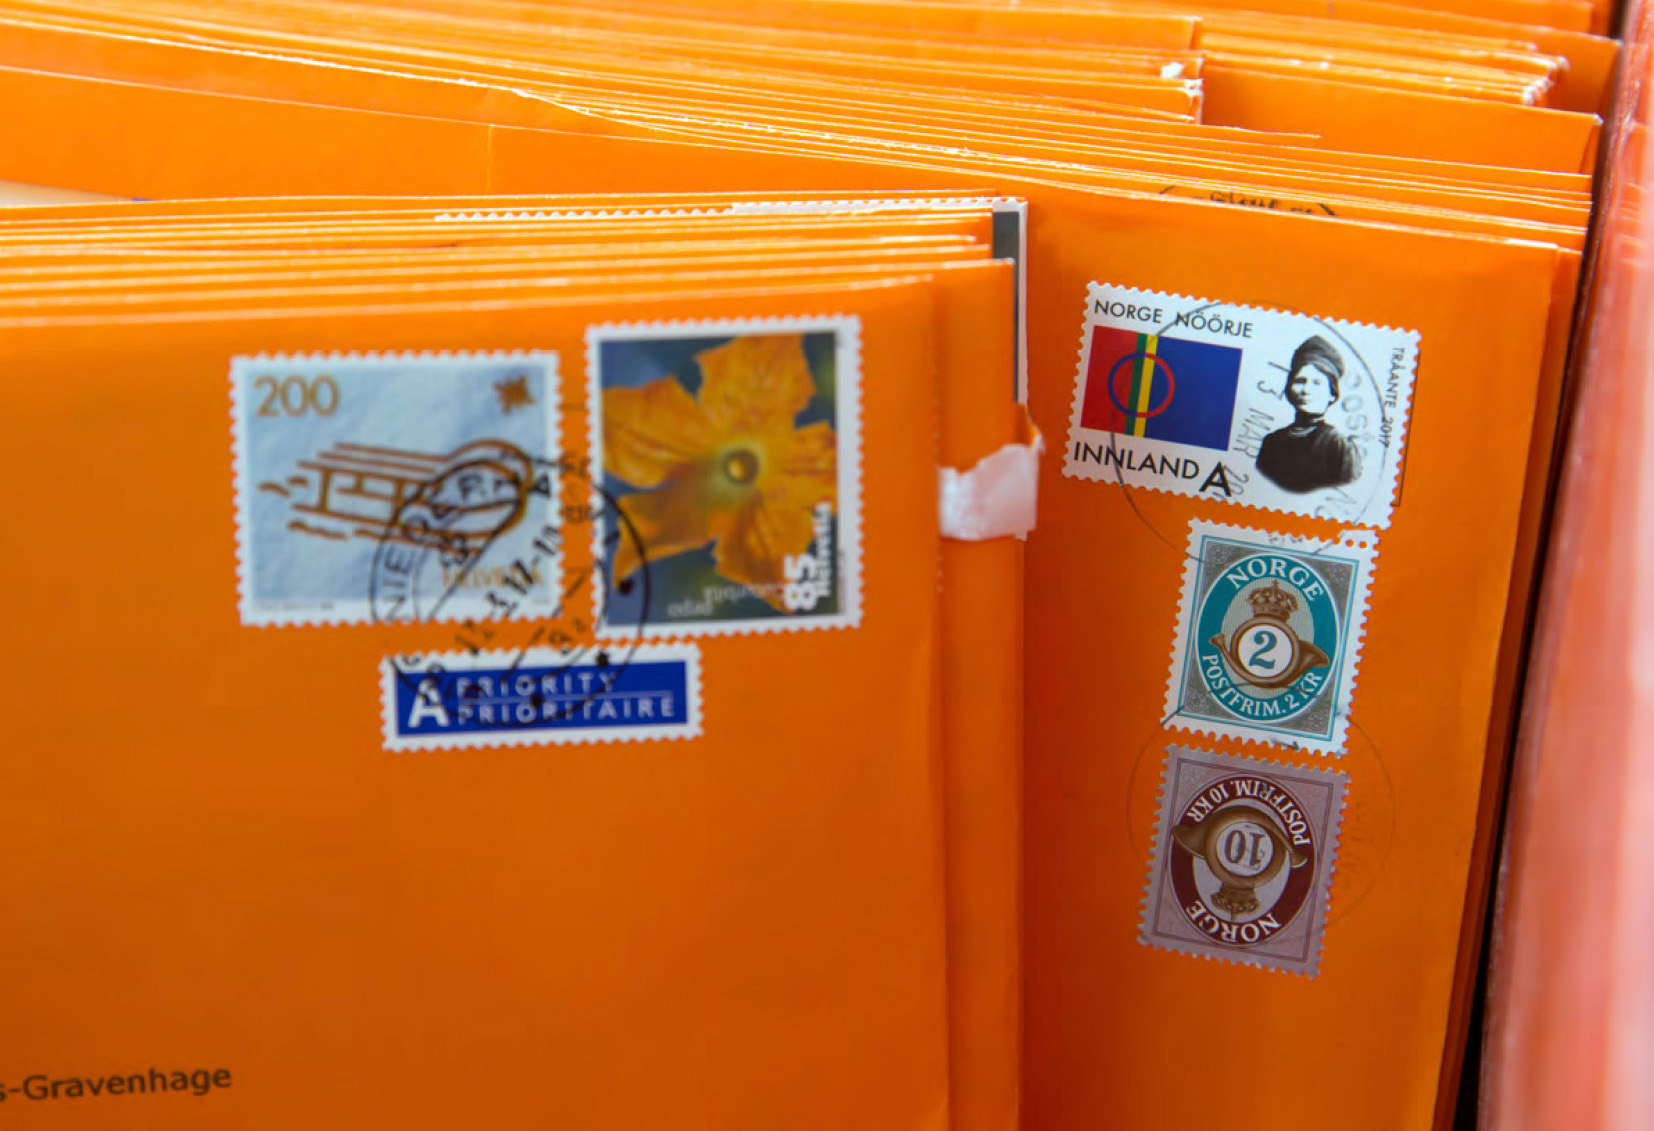 Op de afbeelding zijn oranje enveloppen te zien. Ze zijn verstuurd uit het buitenland, want je ziet bijvoorbeeld postzegels uit Noorwegen.